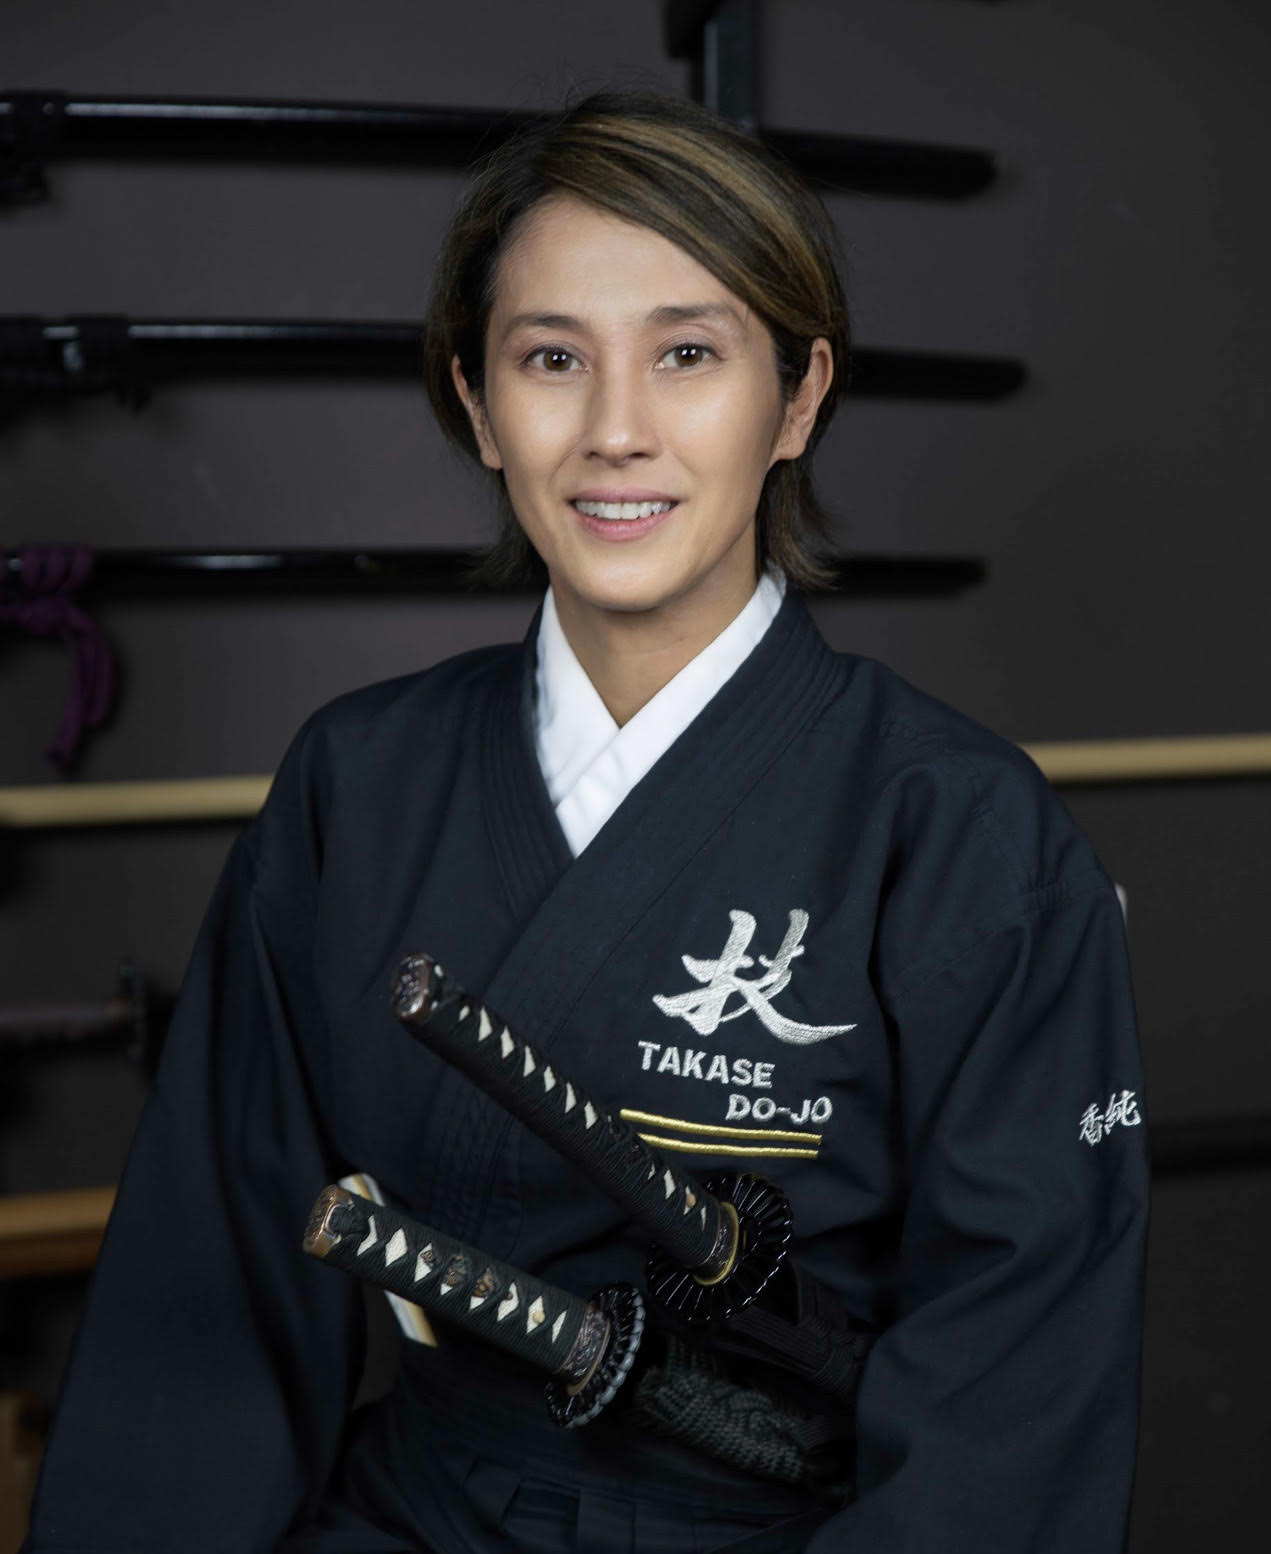 A photo of Kyoko Arai, the namesake of the Kyoko Arai Fund and one of the fund's donors 